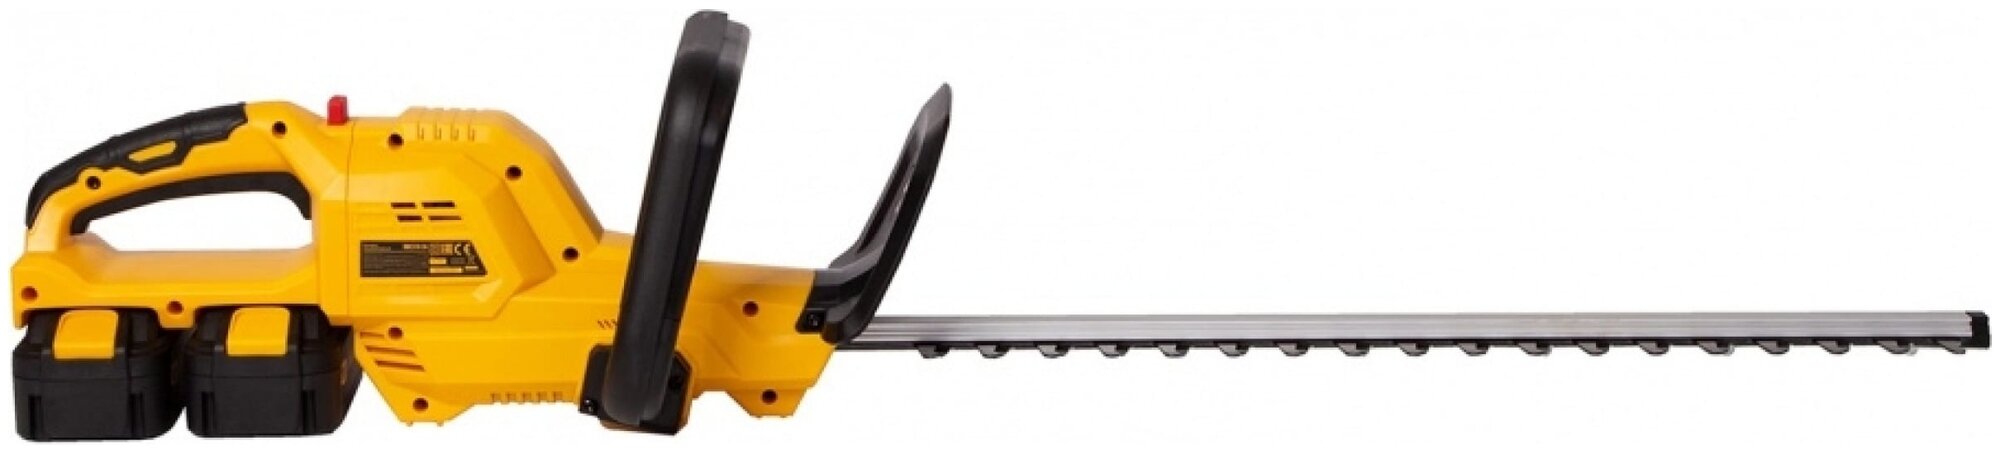 Кусторез аккумуляторный RBC510-36, Li- ion, 36 В, 4 Ач, нож 510 мм, поворотная ручка Denzel - фотография № 5